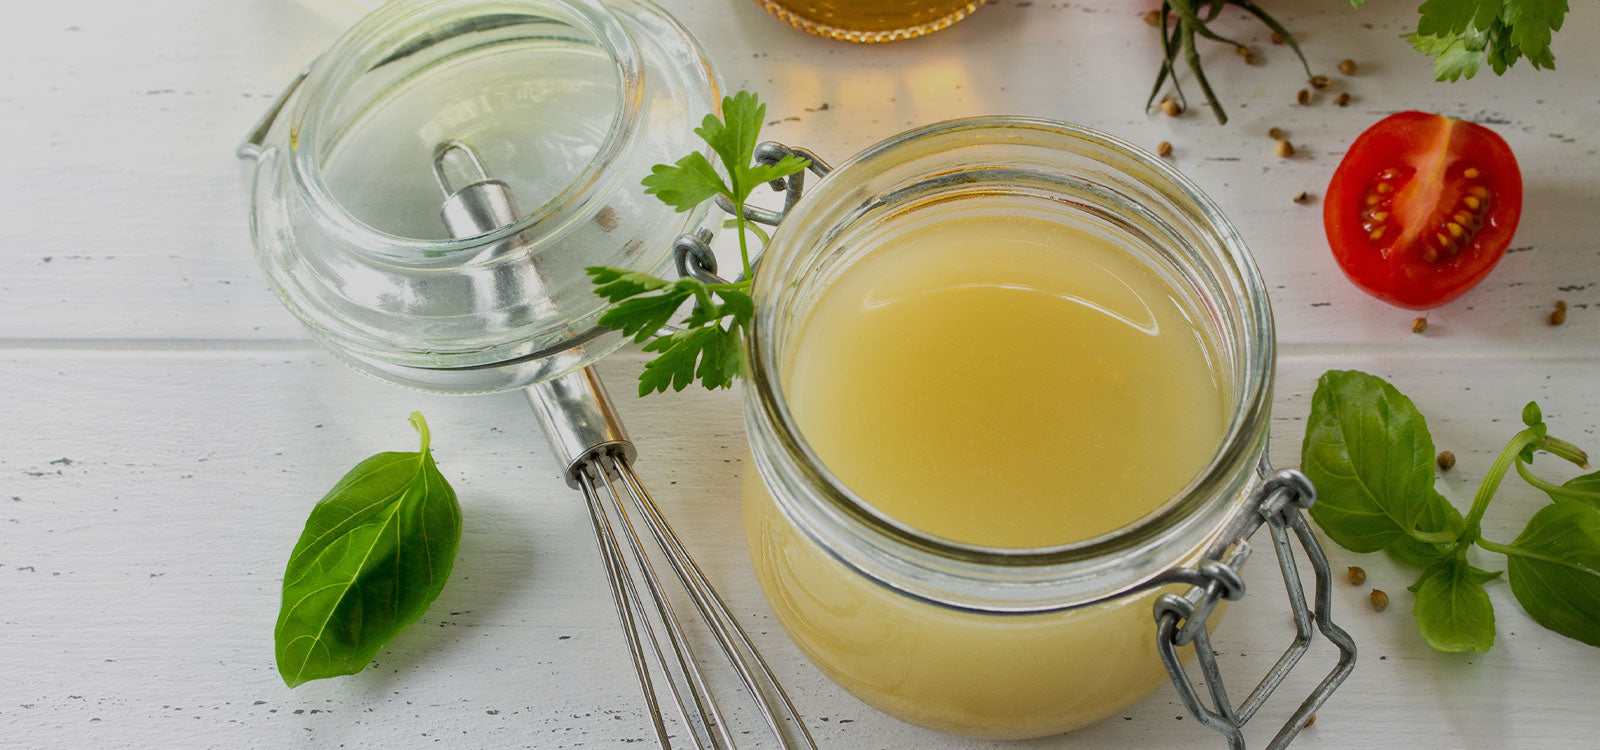 Оливковое масло и лимонный сок. Соус к креветкам оливковое масло, лимон, мед. Оливковое масло с медом и лимонным соком по утрам. Мед, лимон, яблочный уксус, женские руки.